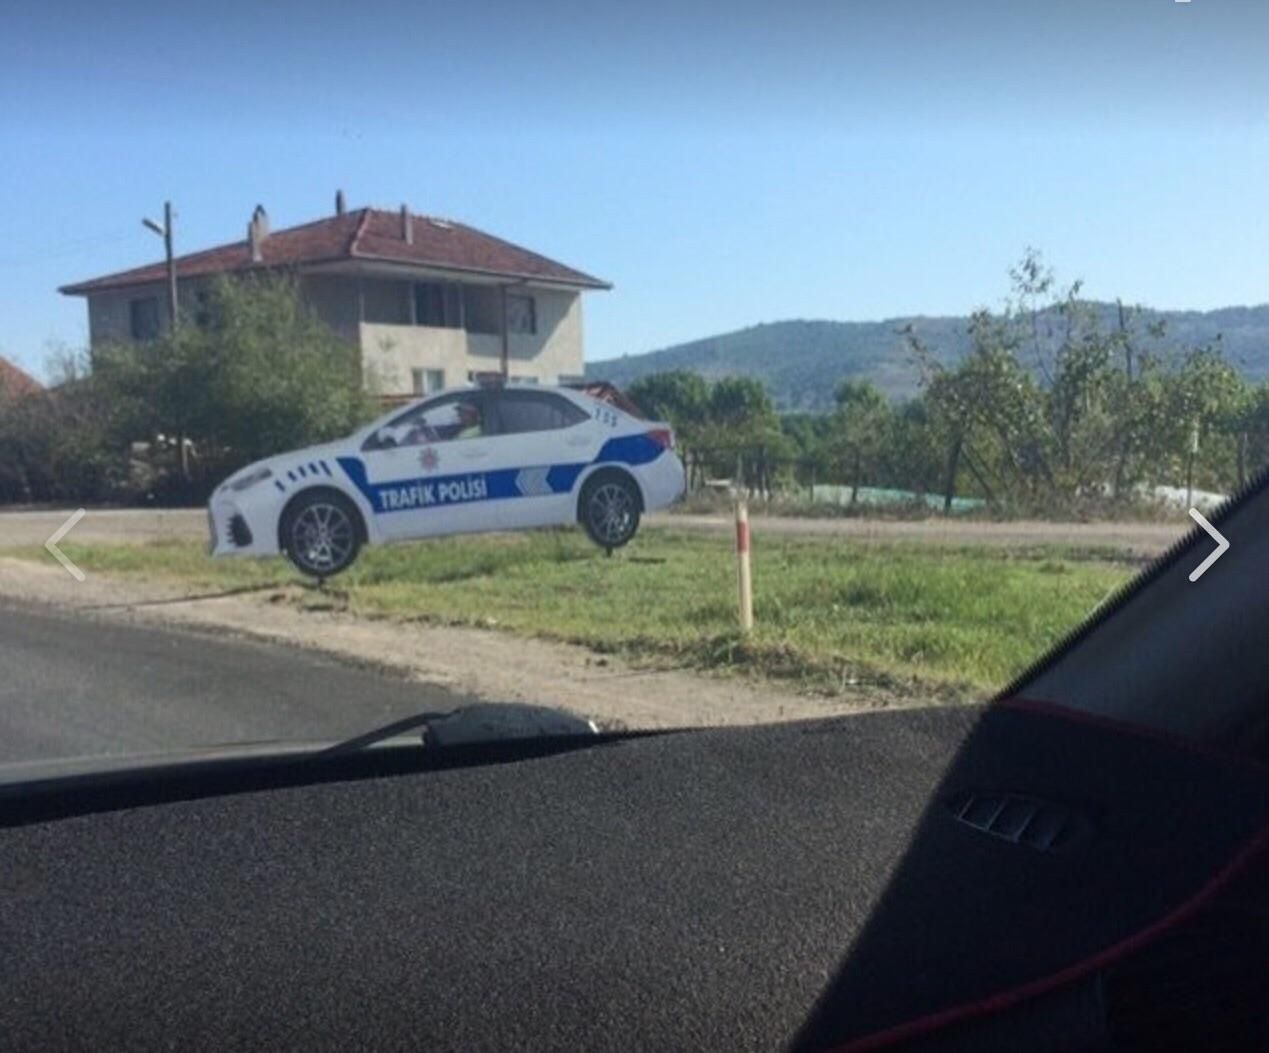 Cops trolling us - Turkey